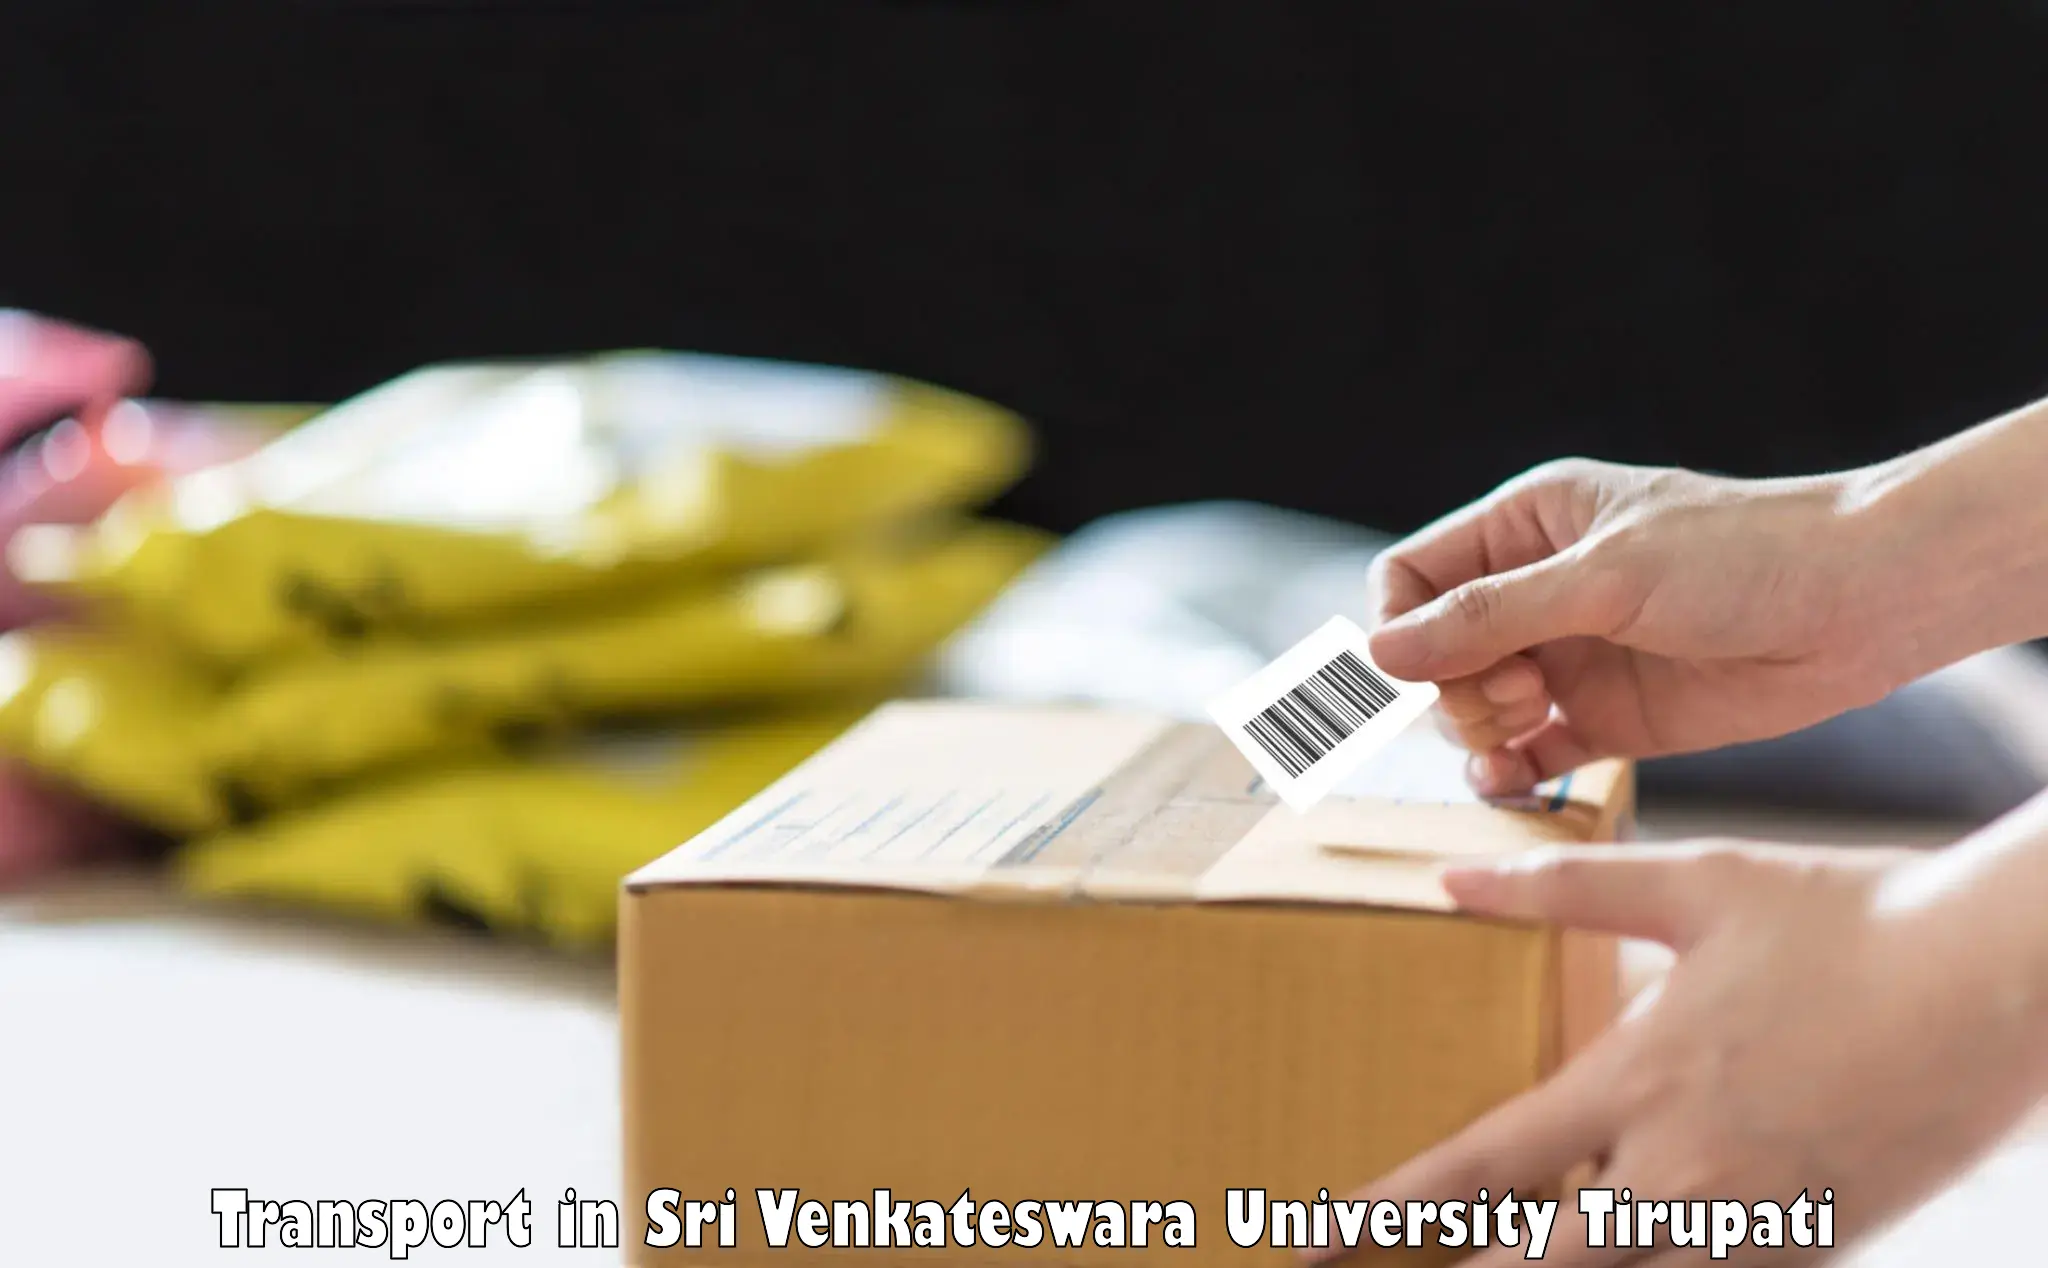 Goods delivery service in Sri Venkateswara University Tirupati